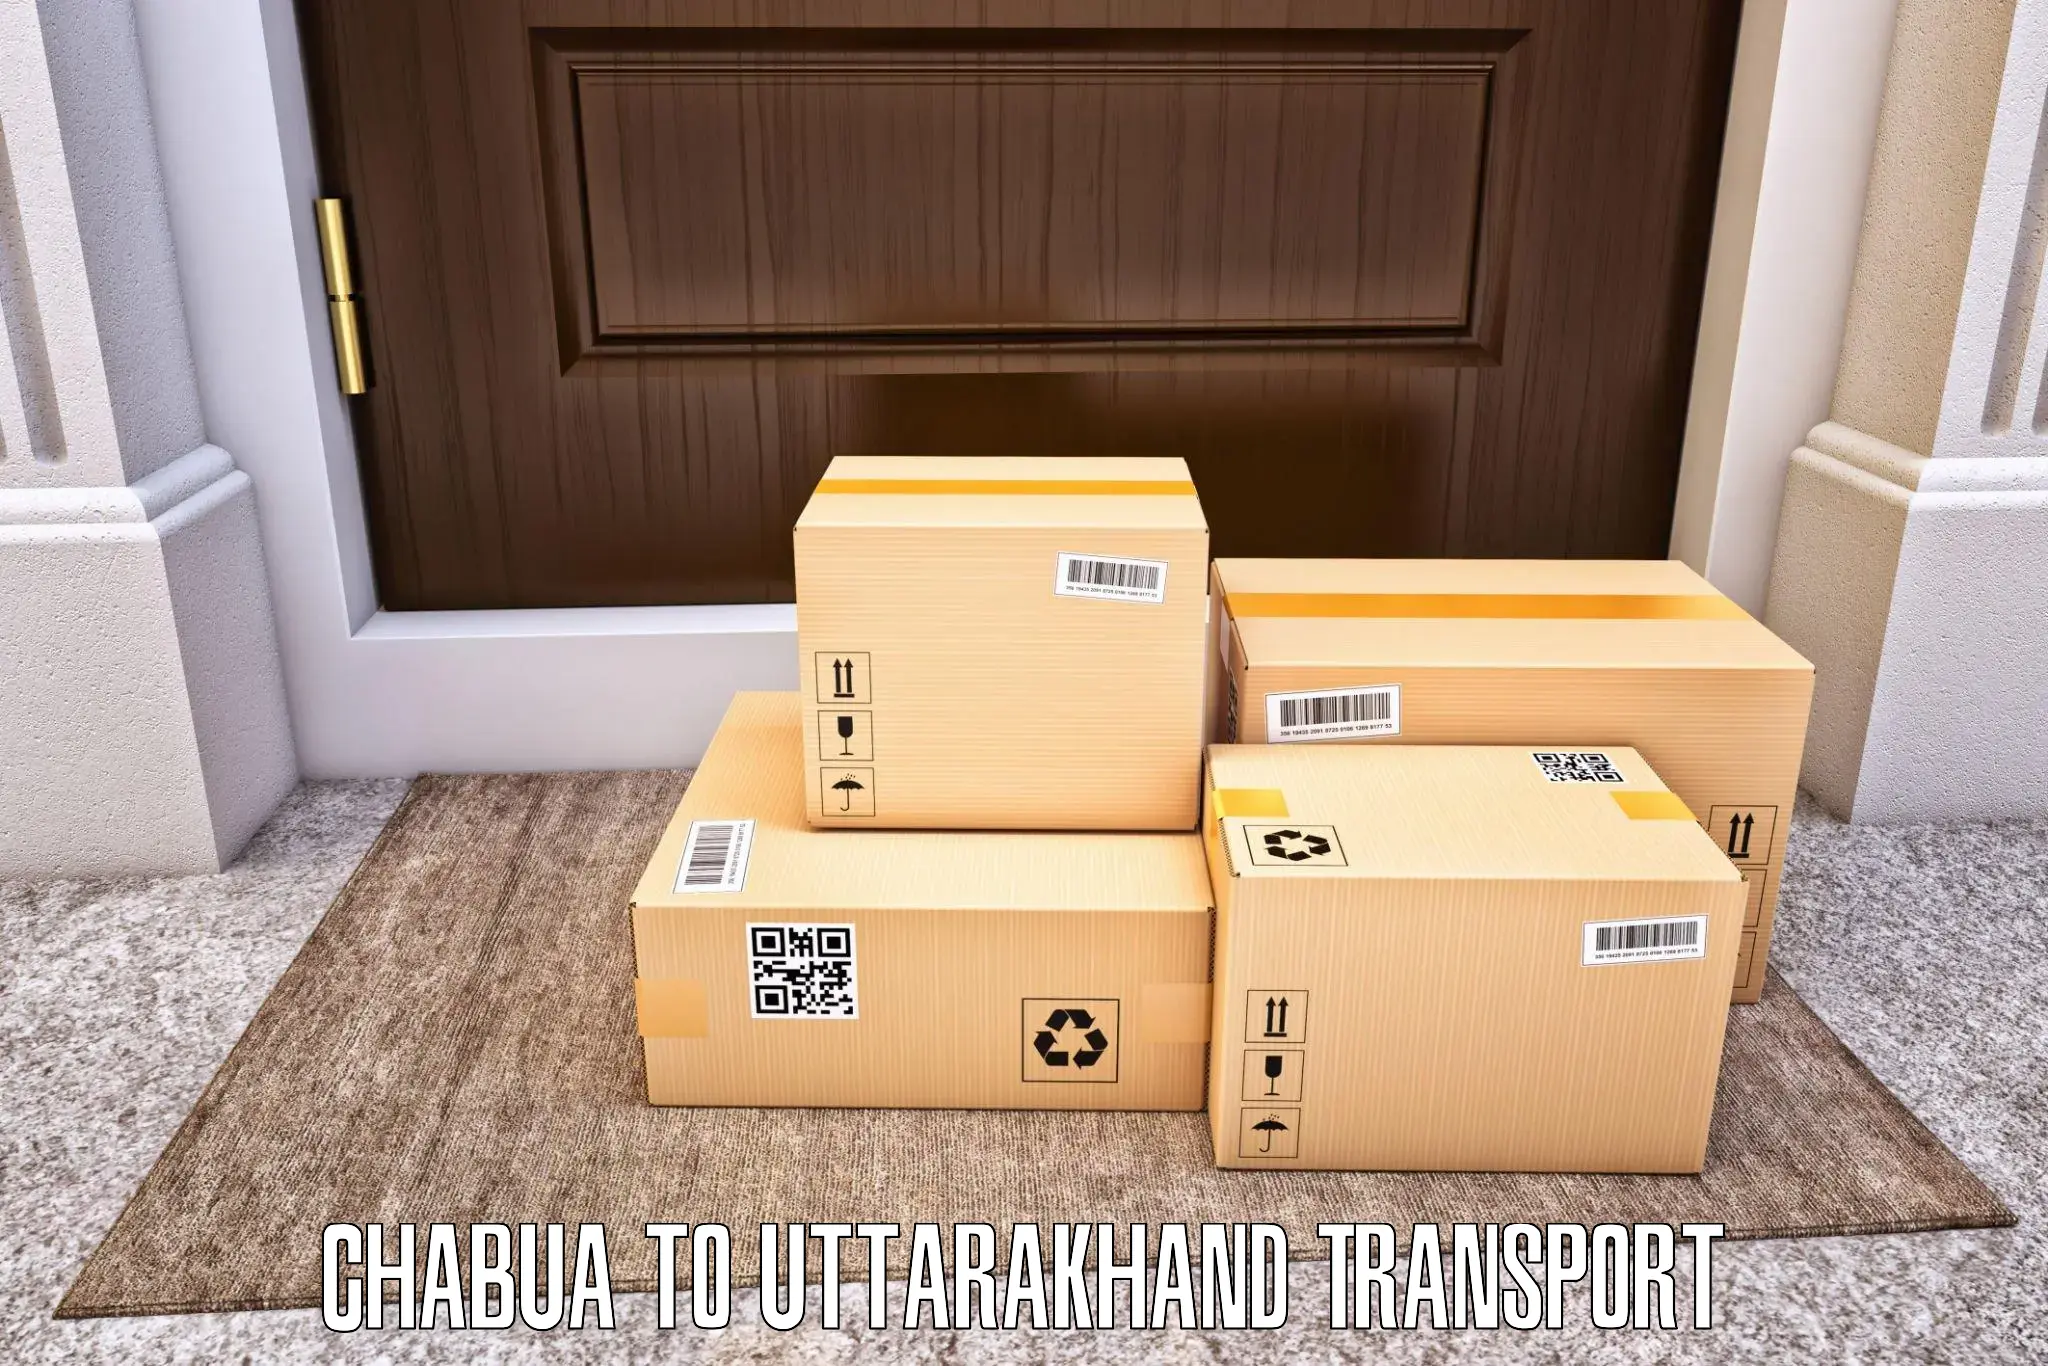 Cargo train transport services Chabua to Nainital